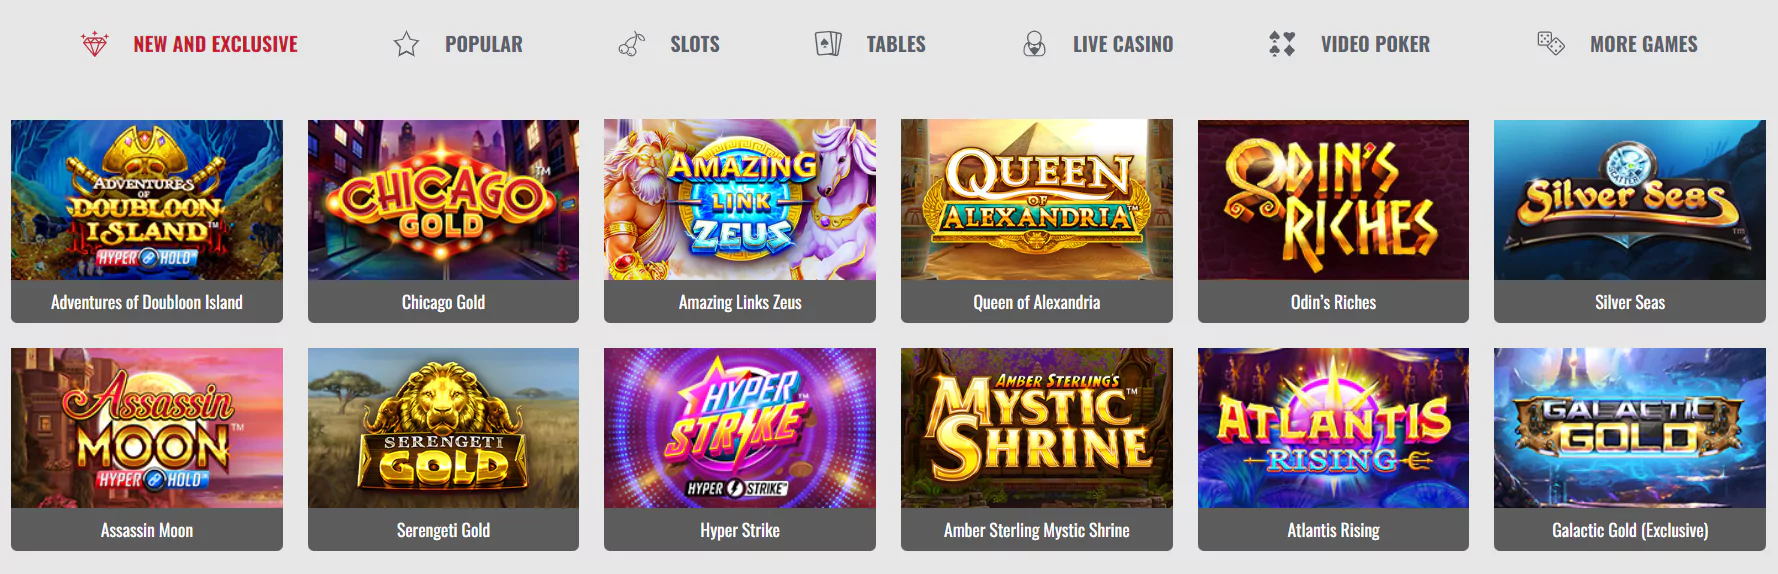 Screenshot of Online Casino Games List - Online Casino in Canada